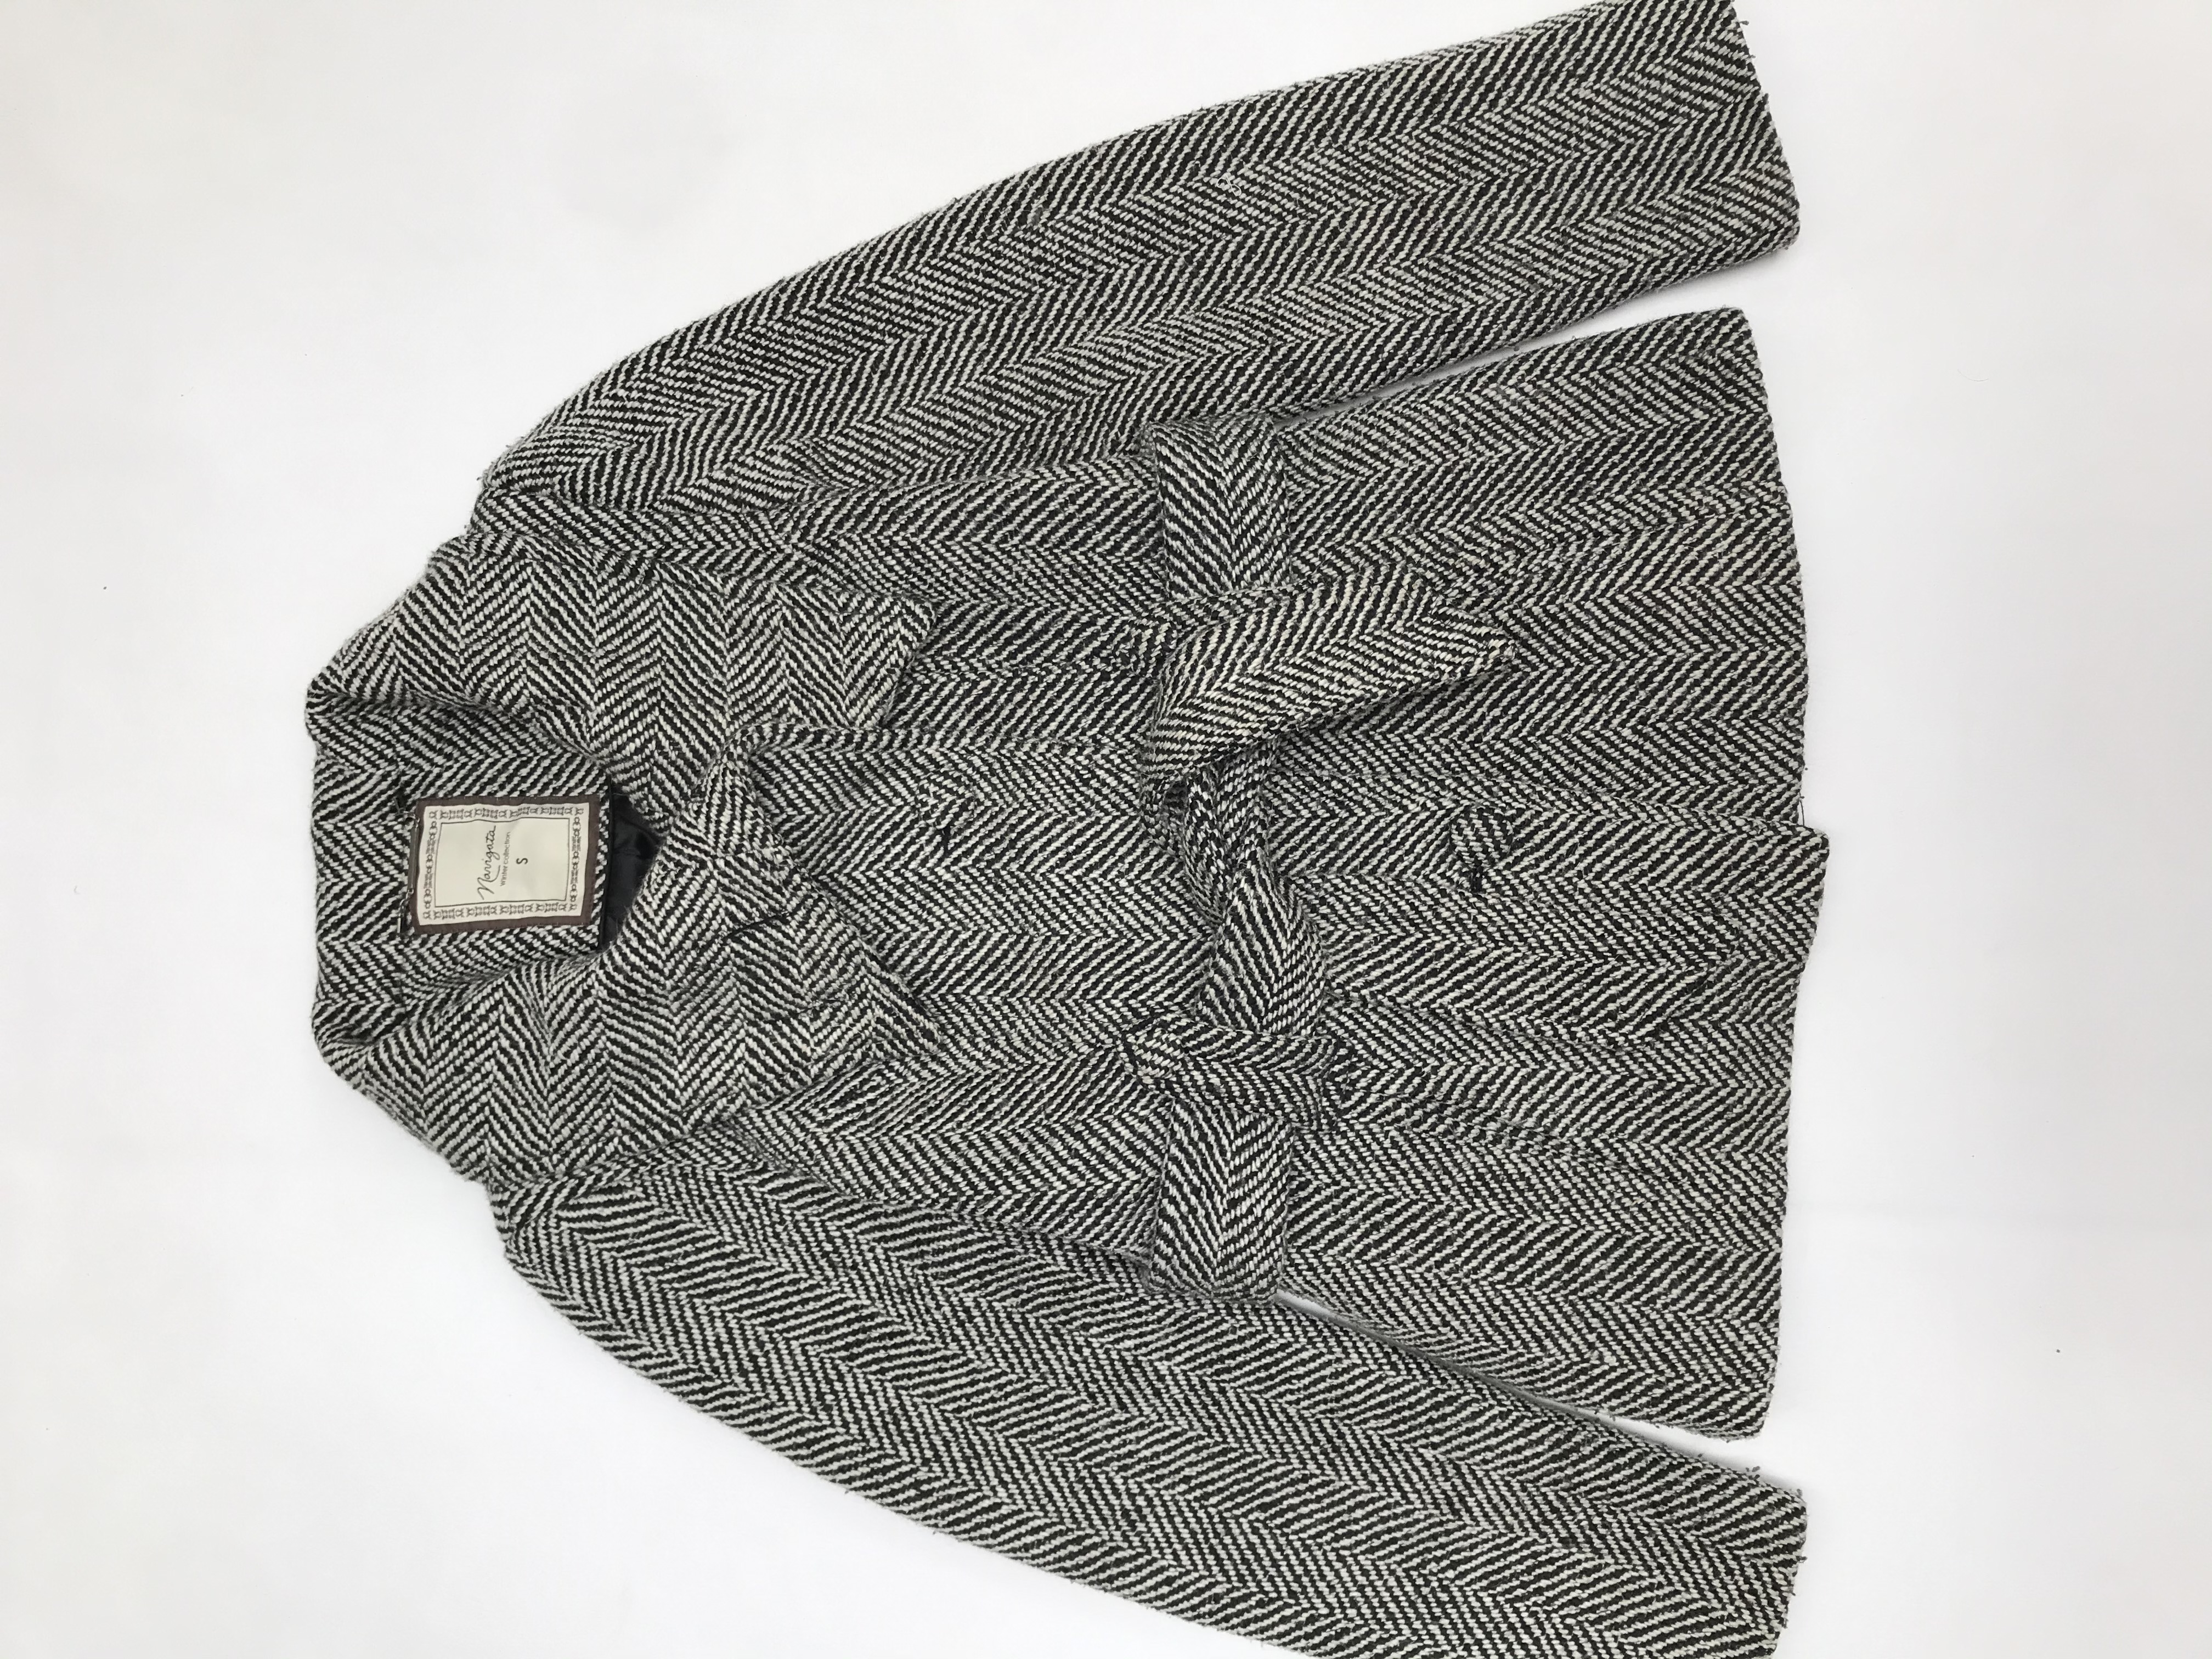 Abrigo Navigata crema y negro 50% lana, forrado, con cinto, botones y bolsillos delanteros